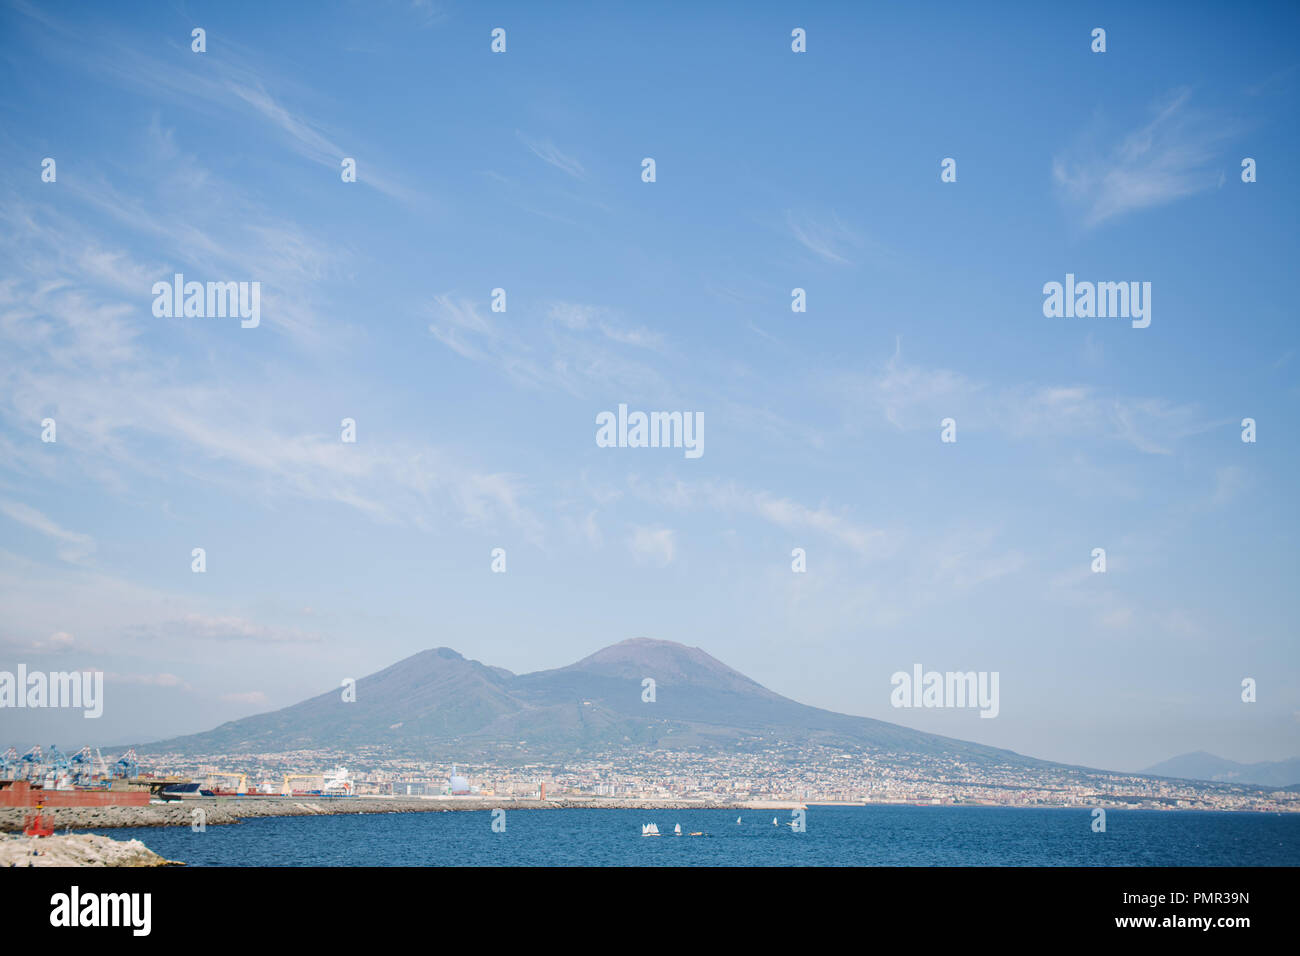 Une vue sur le Mont Vésuve, un volcan près de Naples, de la côte de Naples sur la mer au premier plan, sur une journée d'été Banque D'Images